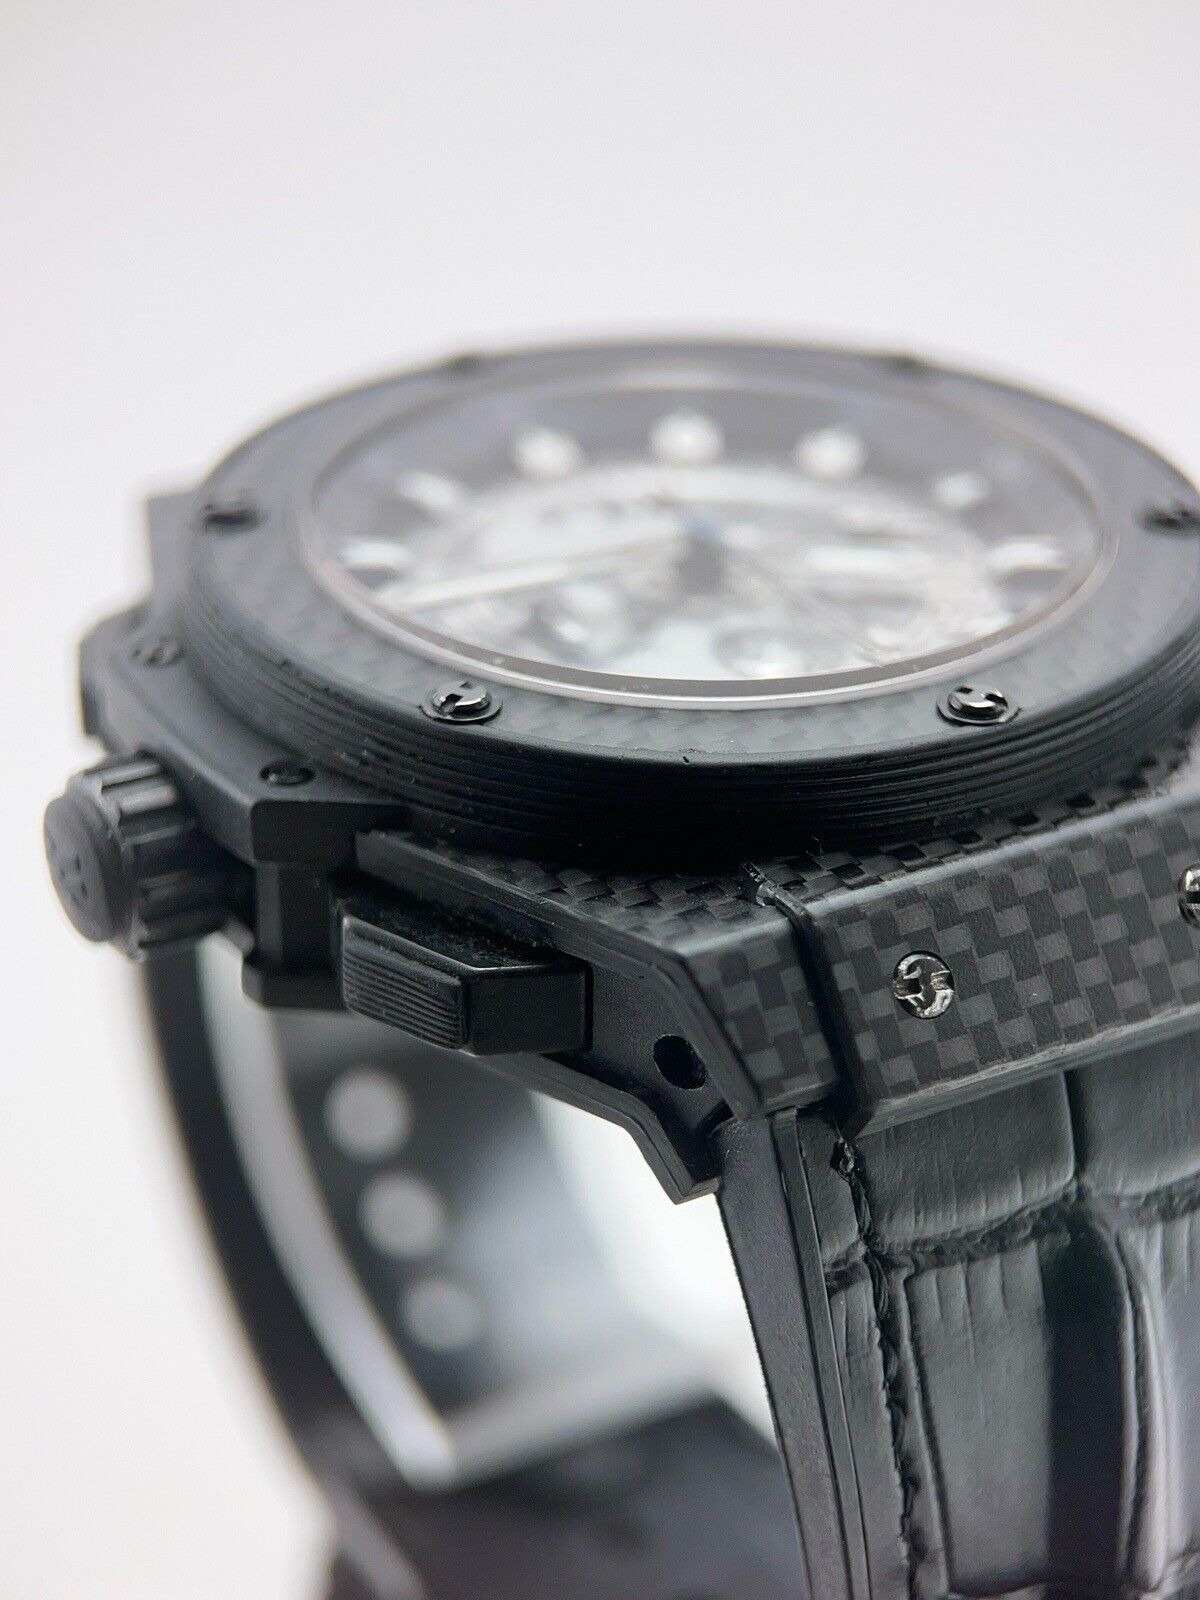 Hublot King Power Carbon Black 48mm Automatic Men’s Watch 701.QX.0140.RX